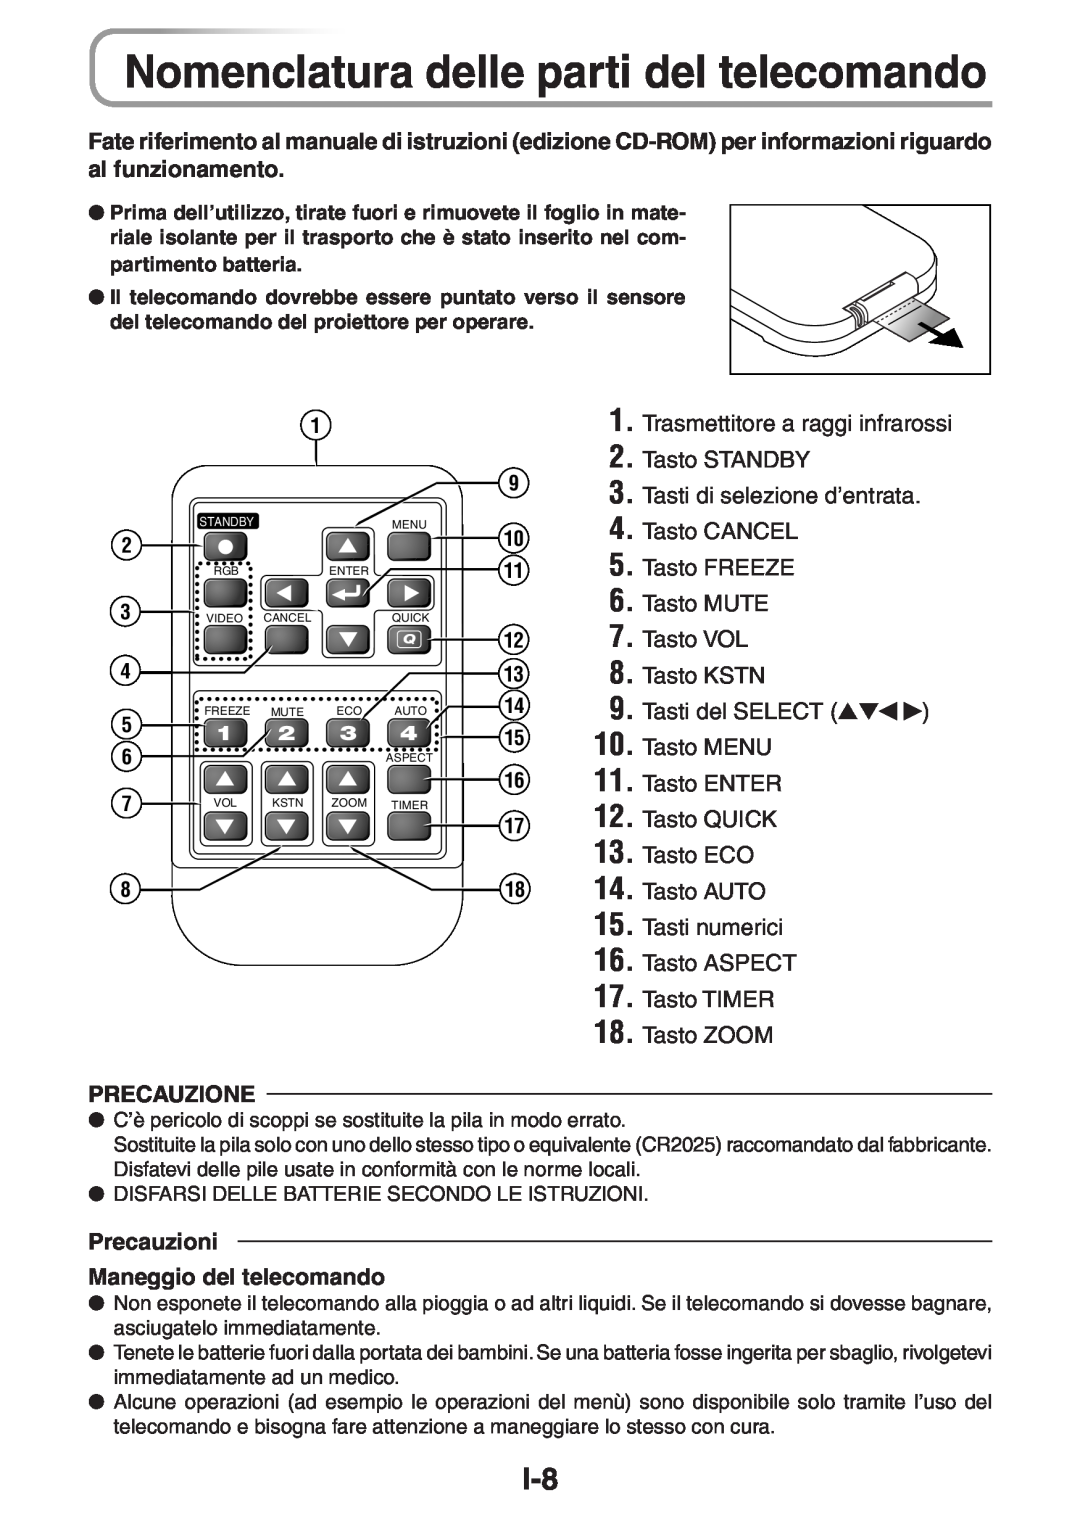 3M PX5 user manual Nomenclatura delle parti del telecomando, Trasmettitore a raggi infrarossi 2. Tasto STANDBY, Tasto ZOOM 